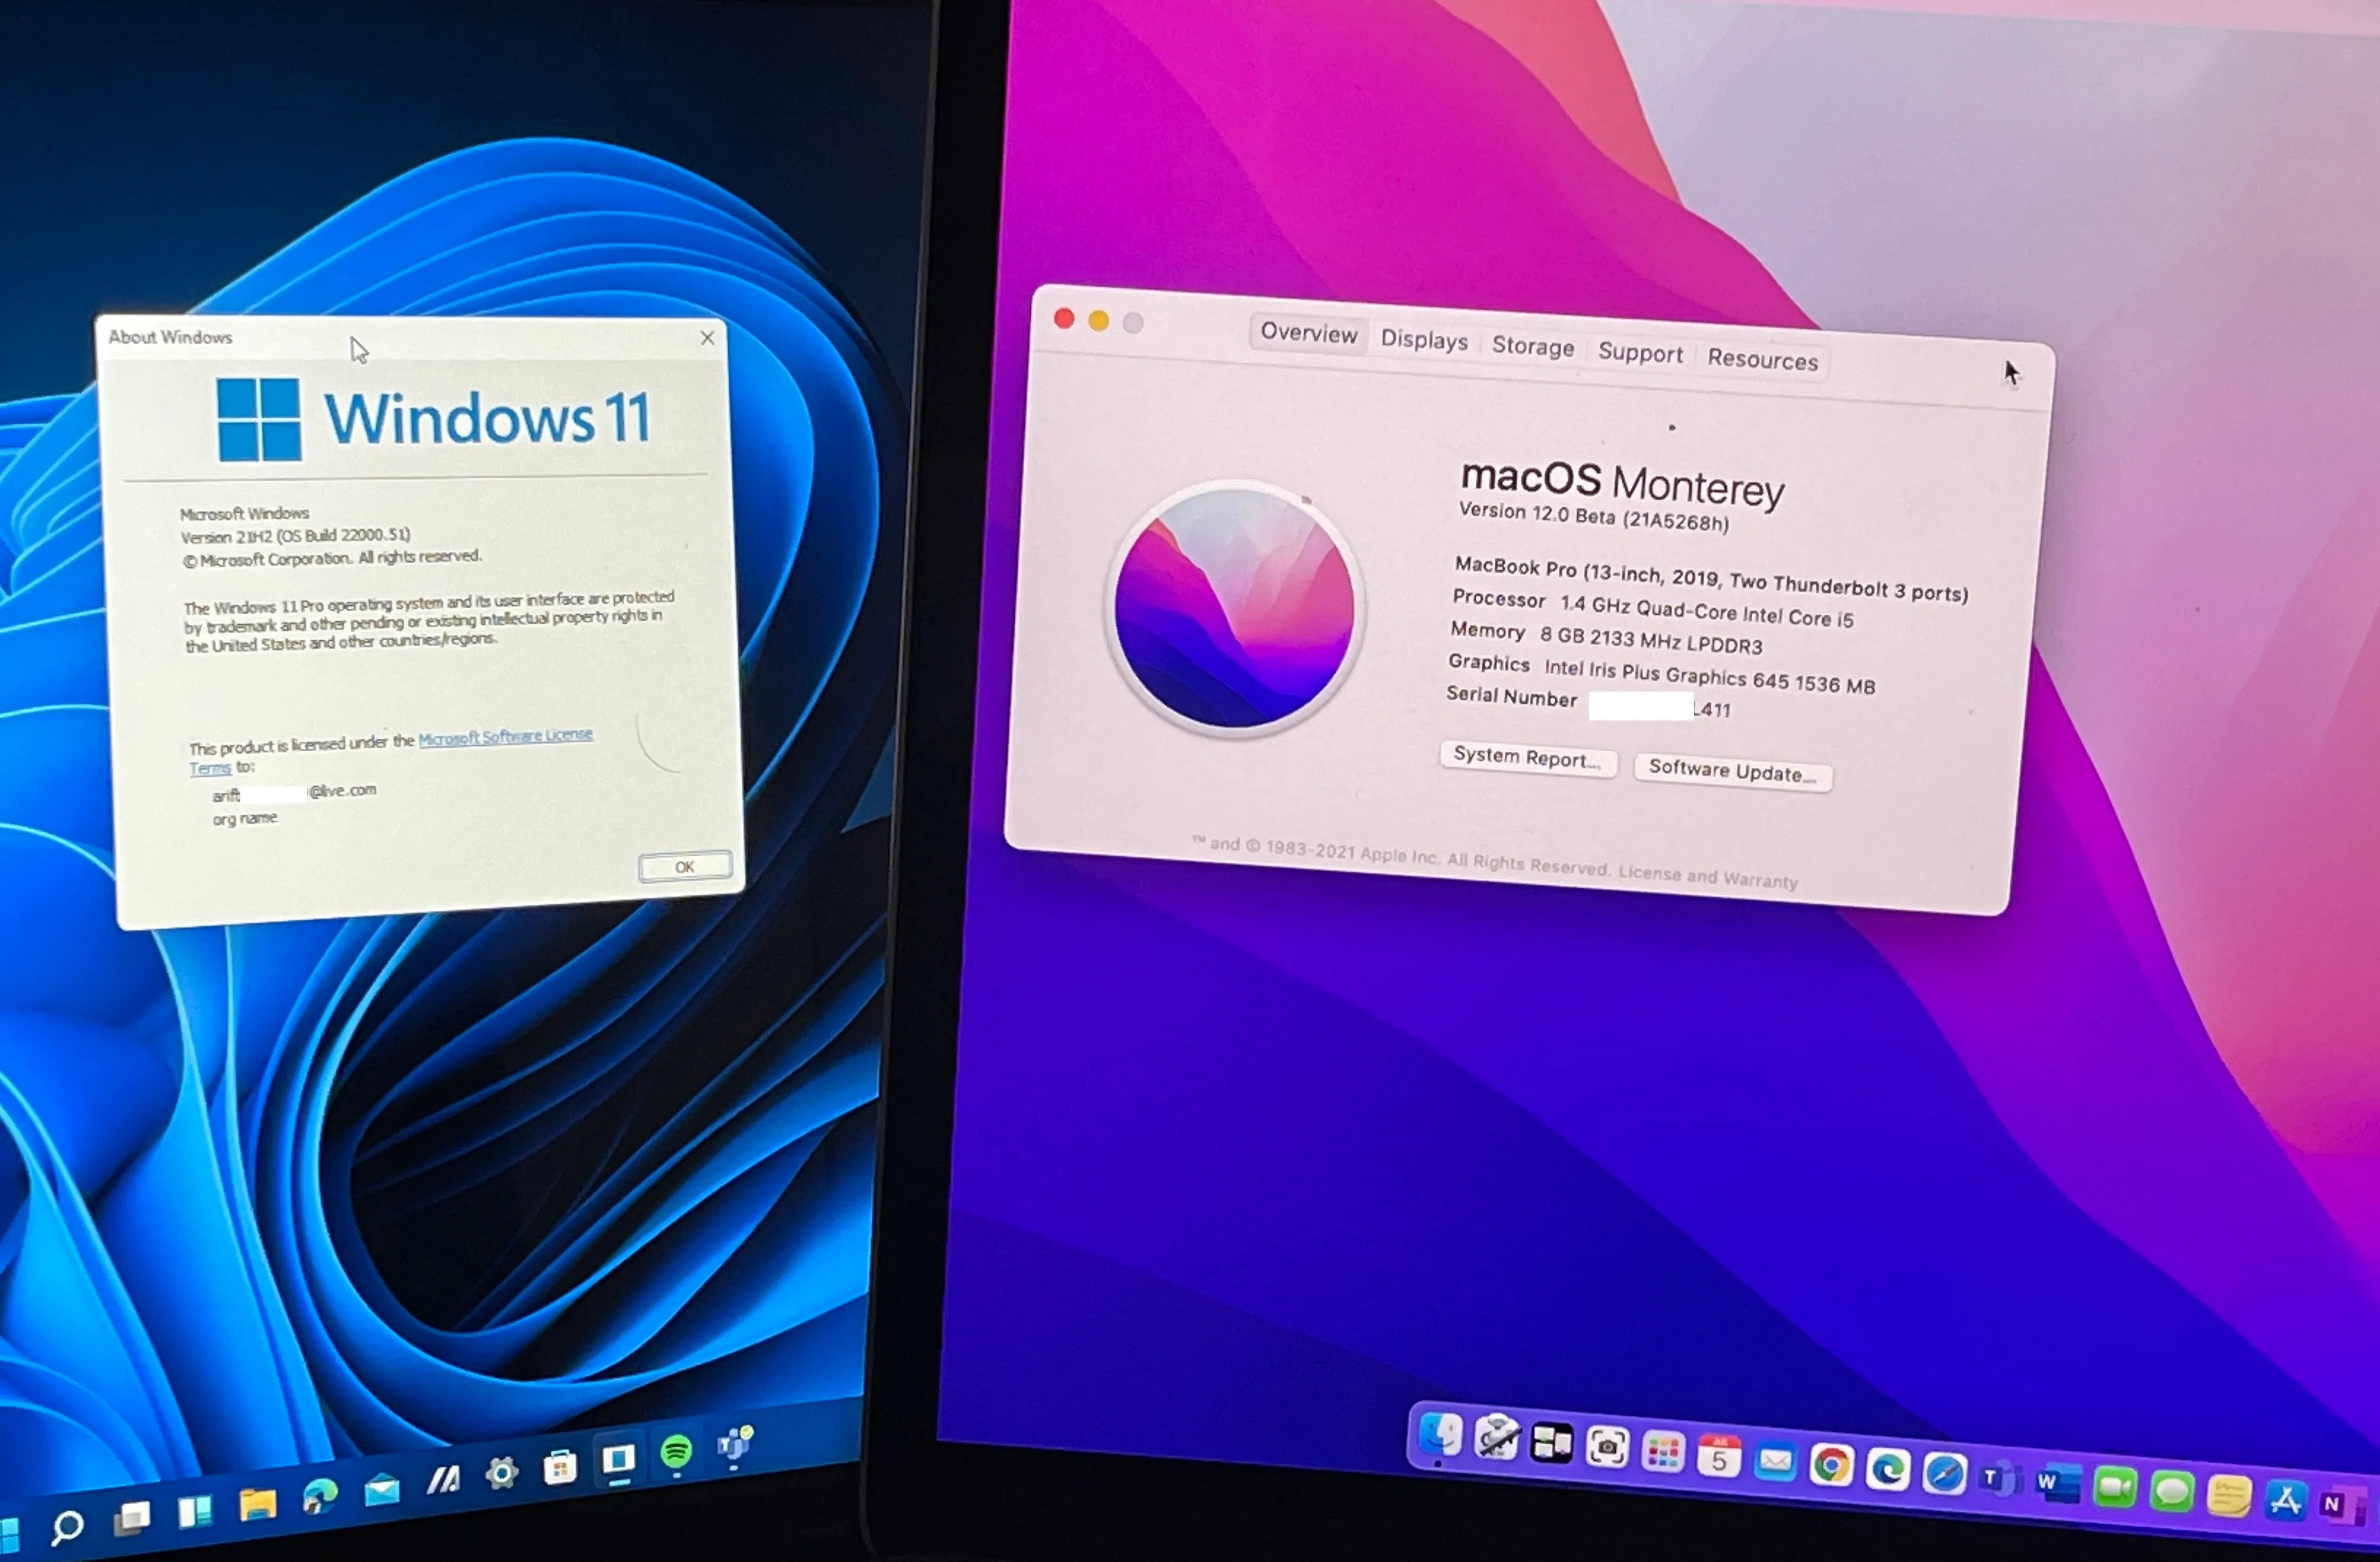 As páginas sobre o MacOS Monterey e o Windows 11 lado a lado